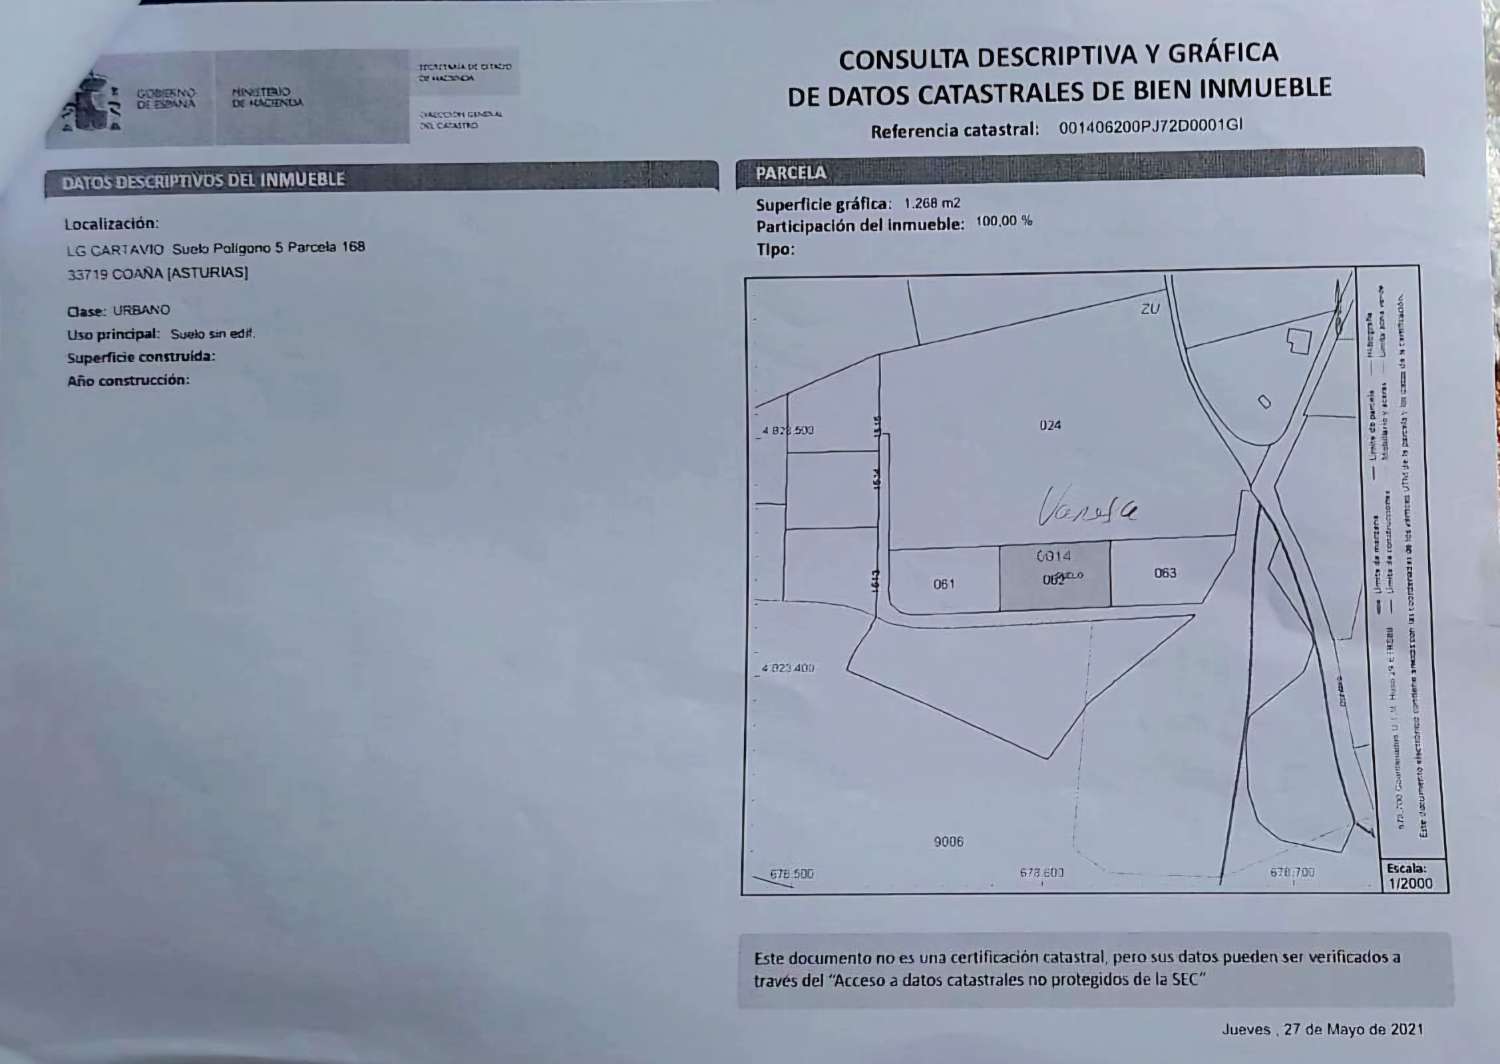 Building plot in Cartavio - Coaña